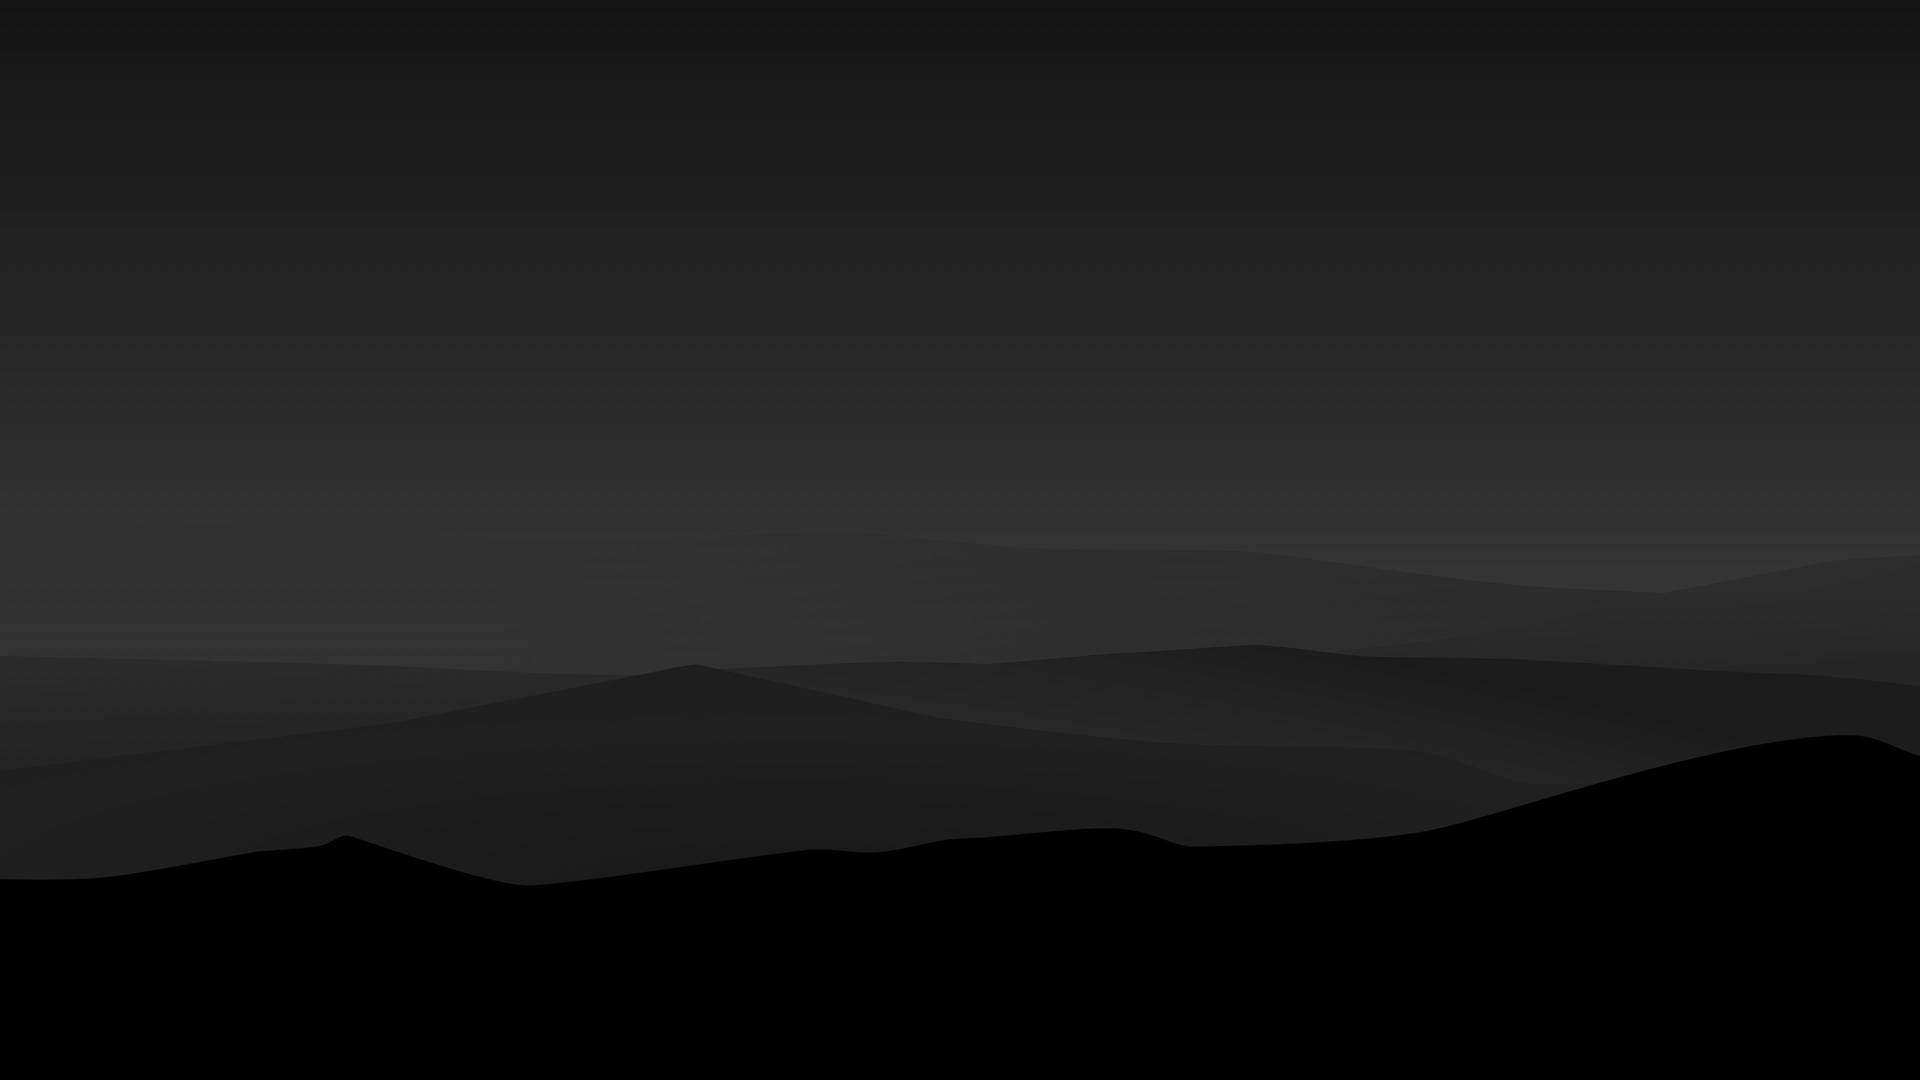 Dark Minimalist Mountains Background